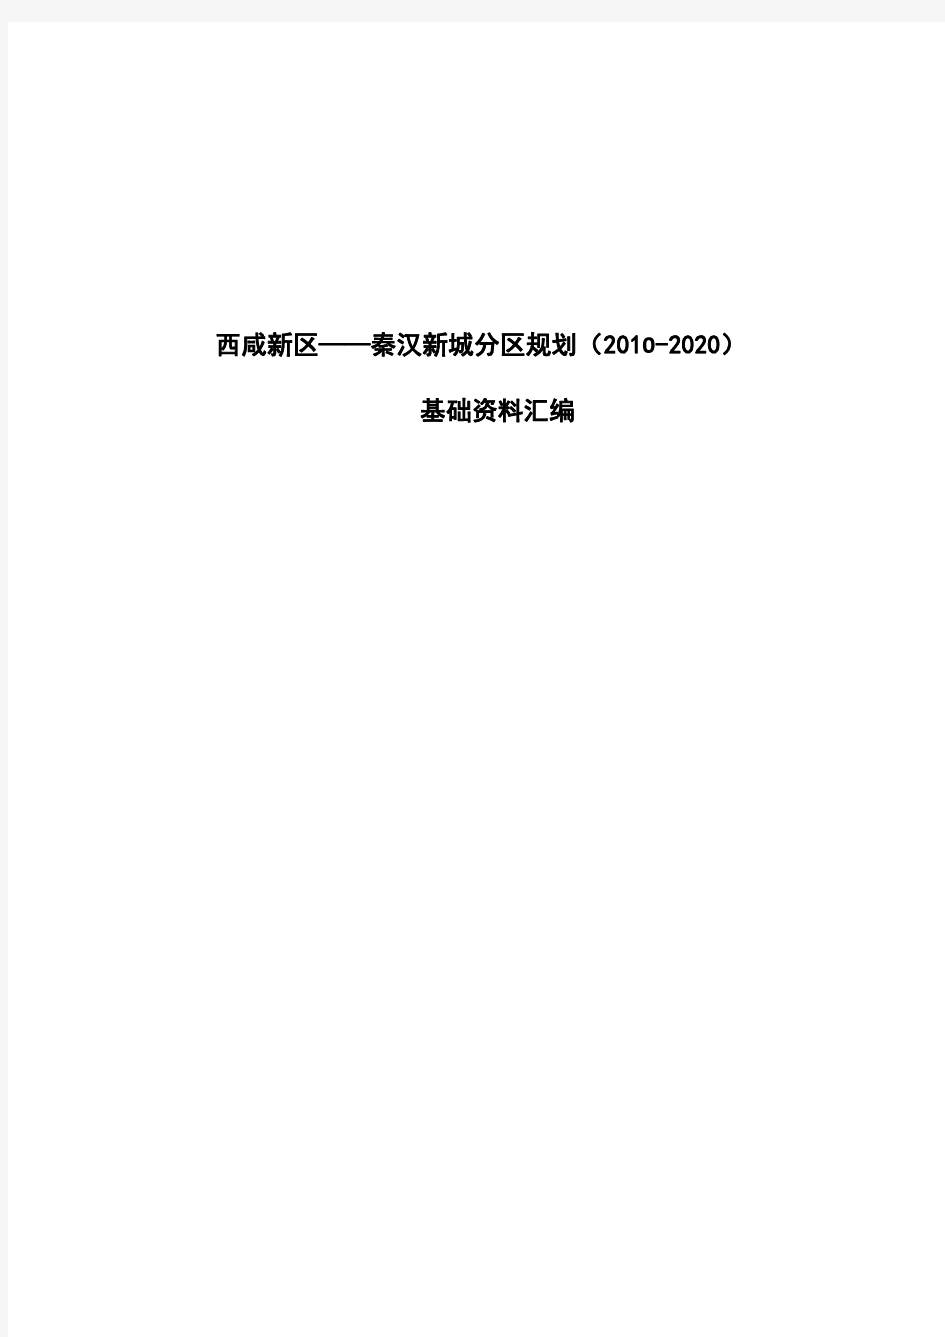 西咸新区——秦汉新城分区规划2010-2020